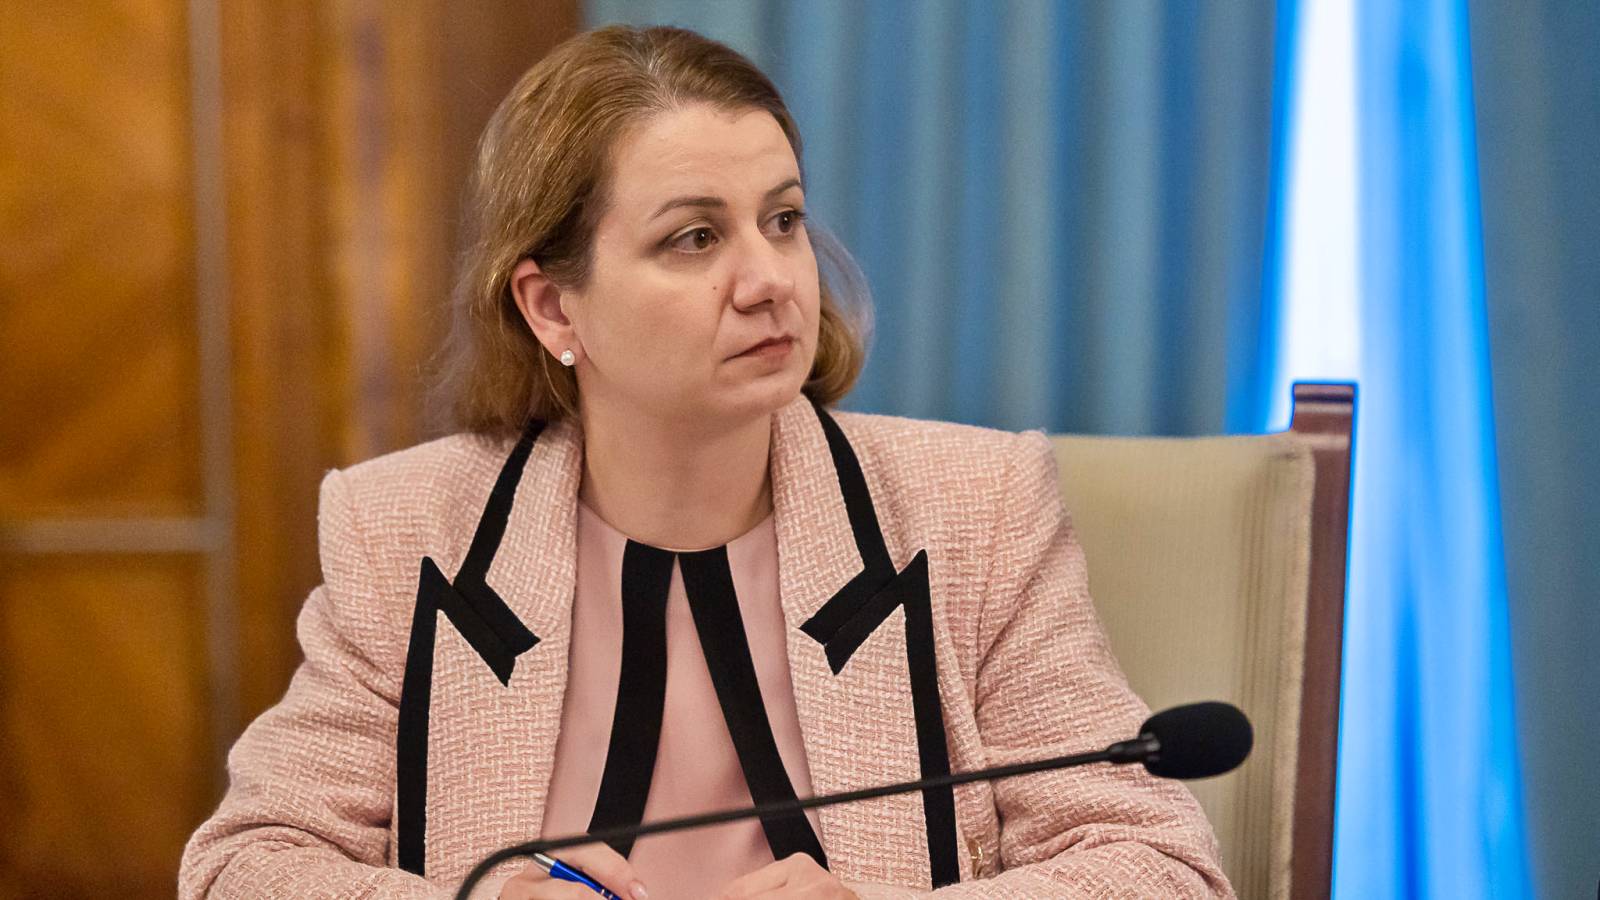 De minister van Onderwijs keurt officieel BELANGRIJKE veranderingen aan Roemeense scholen goed